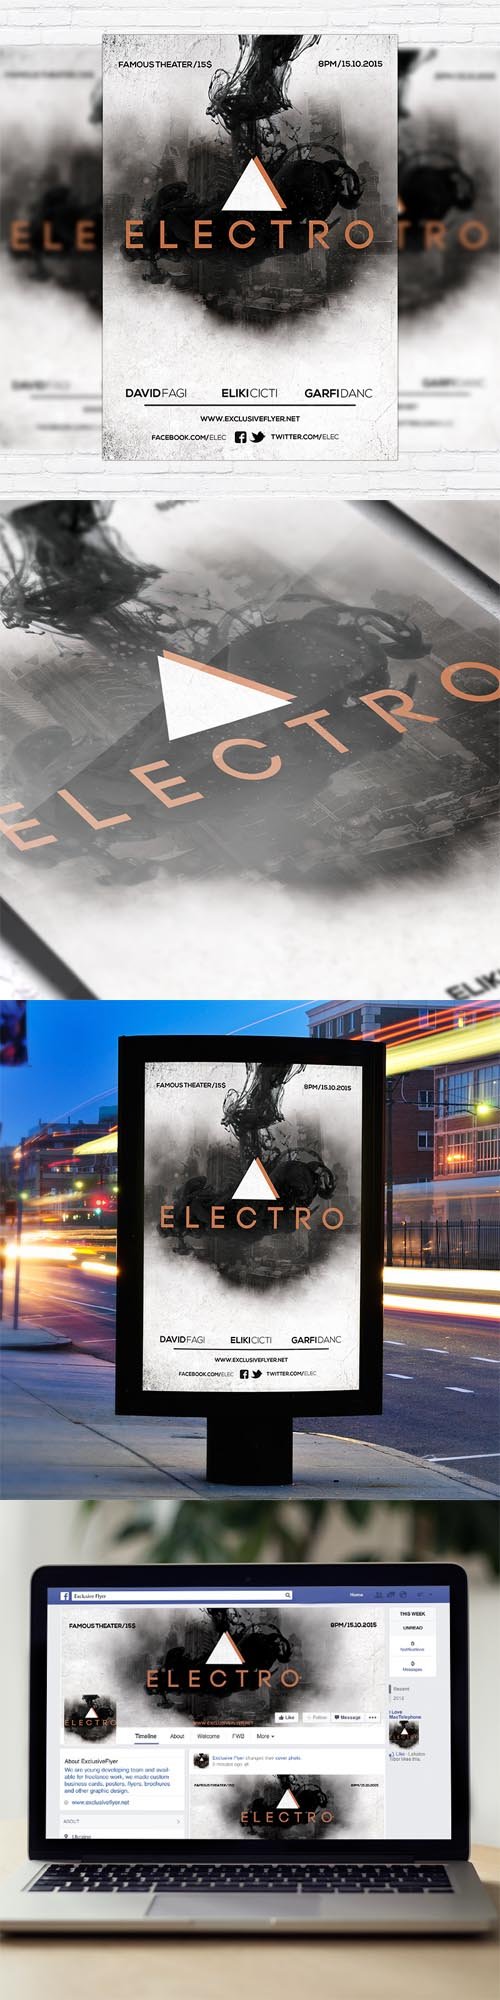 Flyer Template - Electro Vol.2 + Facebook Cover